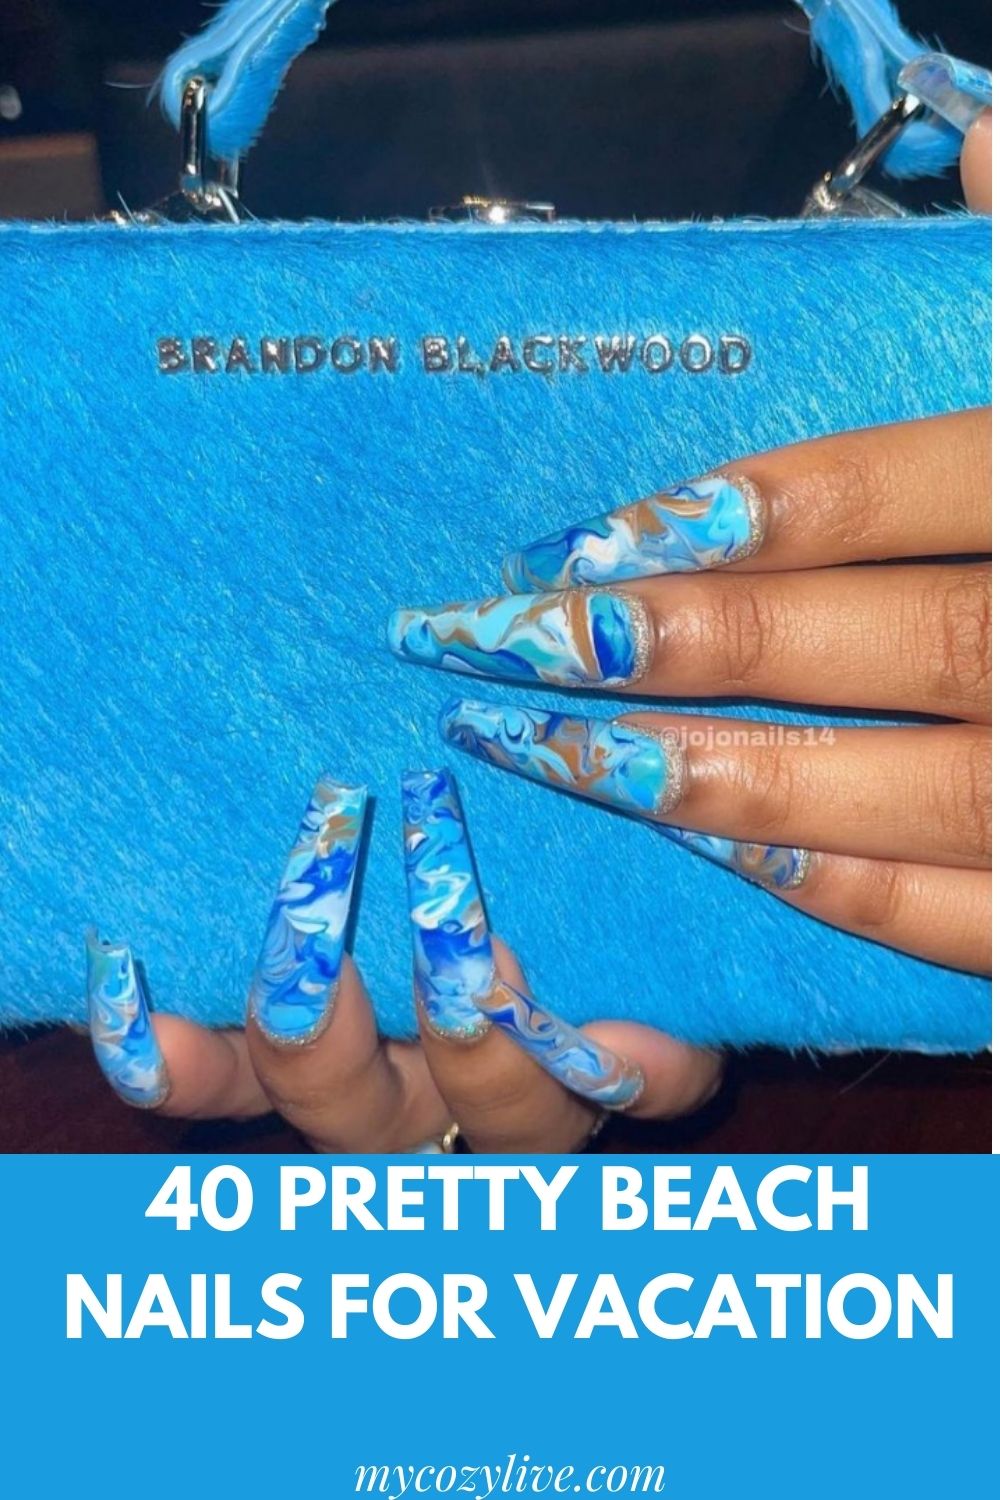 Beach Nail Designs: 40 Pretty Nail Ideas For Vacation!